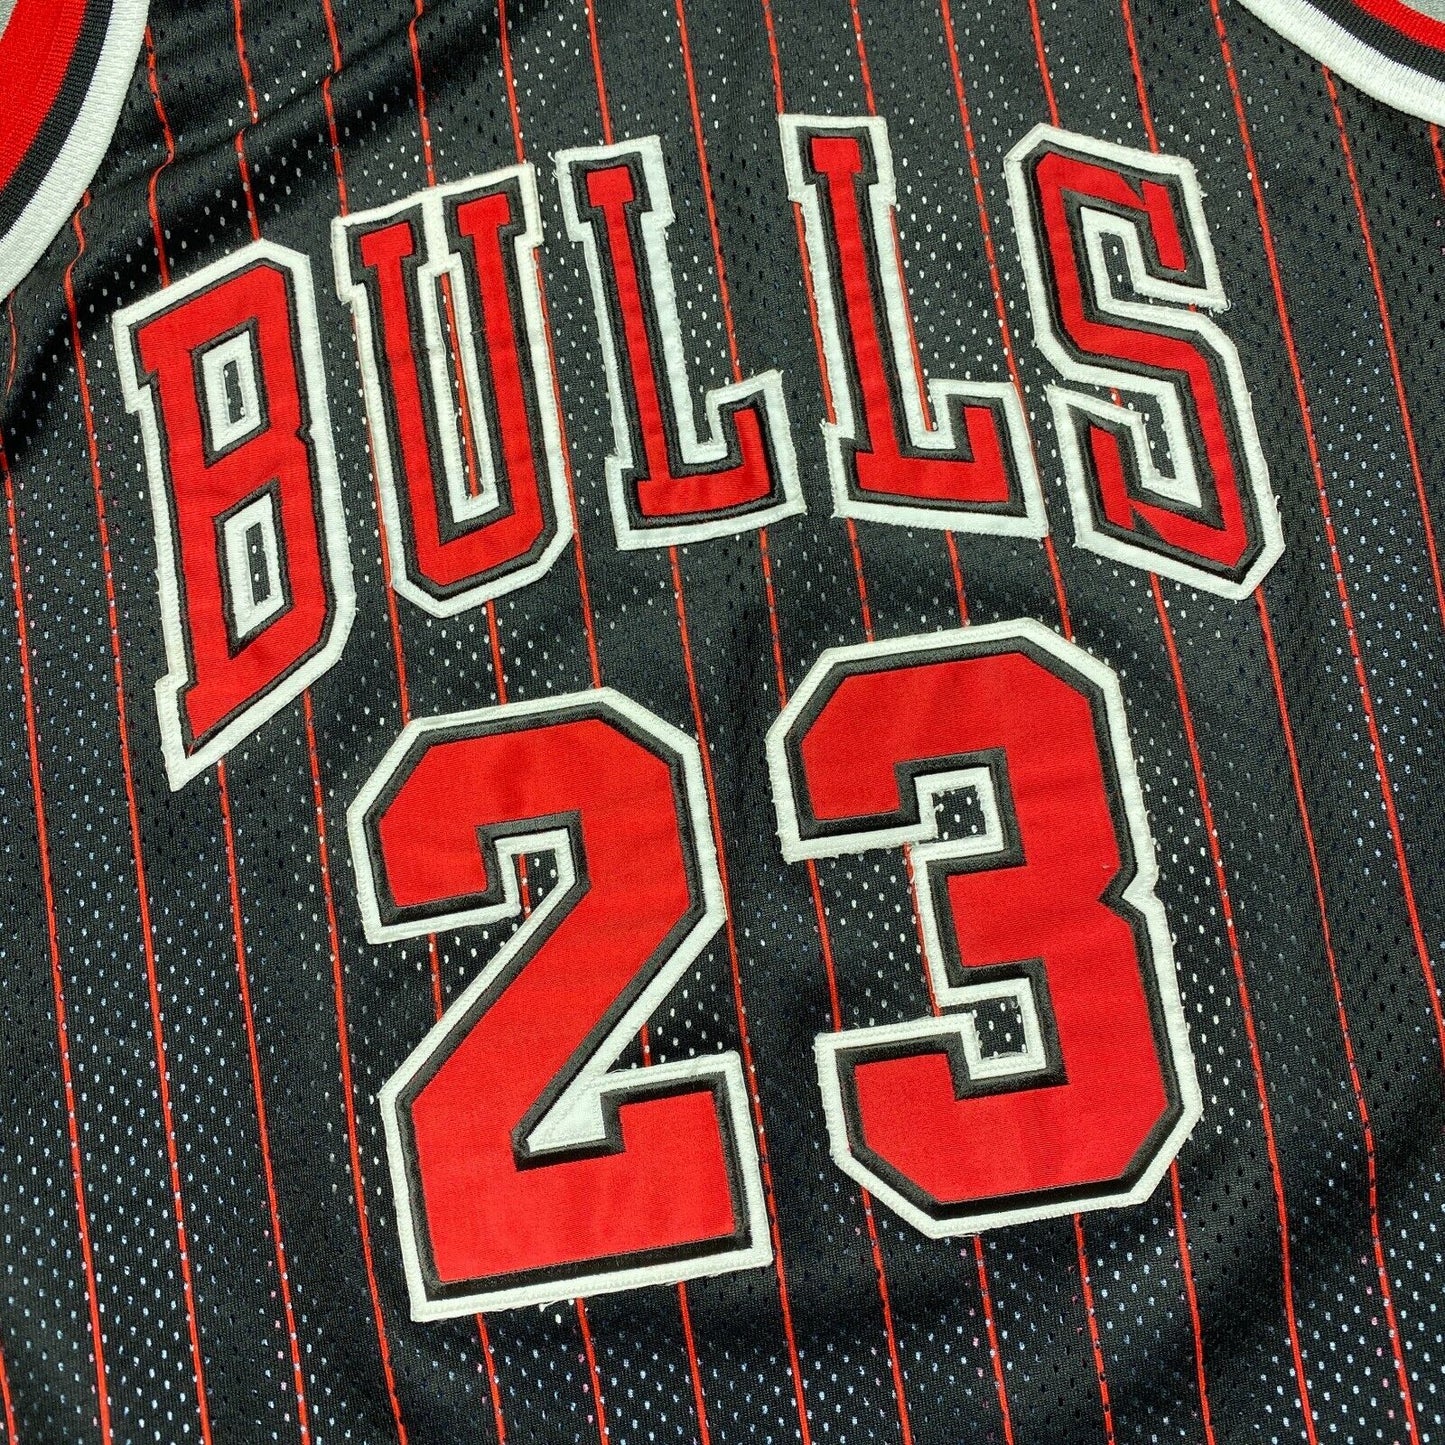 100% Authentic Michael Jordan Vintage Champion 95 96 Bulls Jersey Size 44 M L